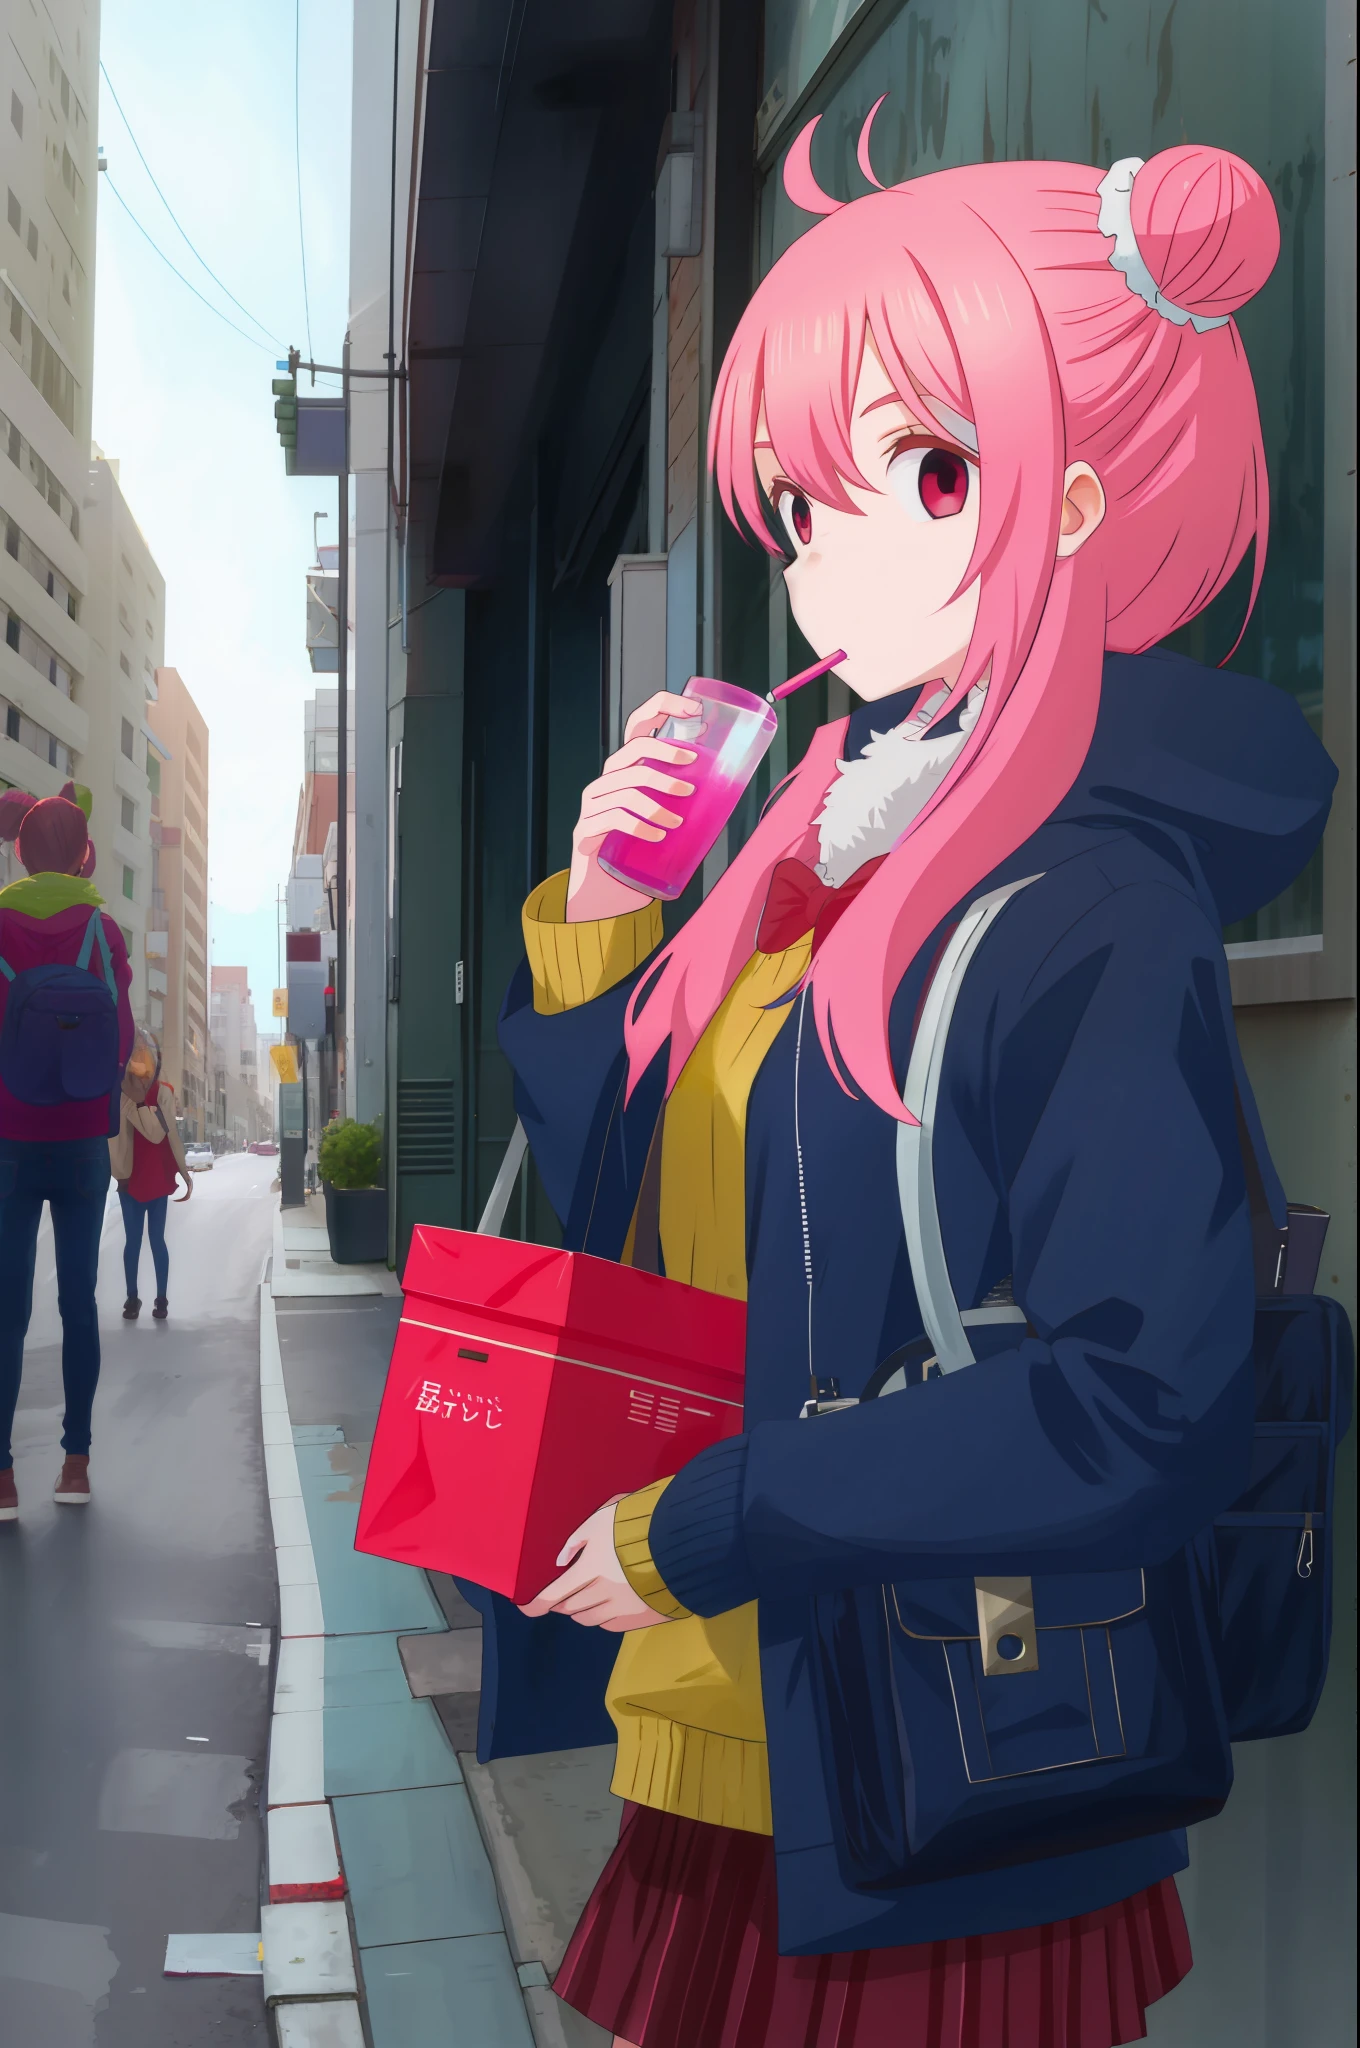 Chica en la calle bebiendo jugo